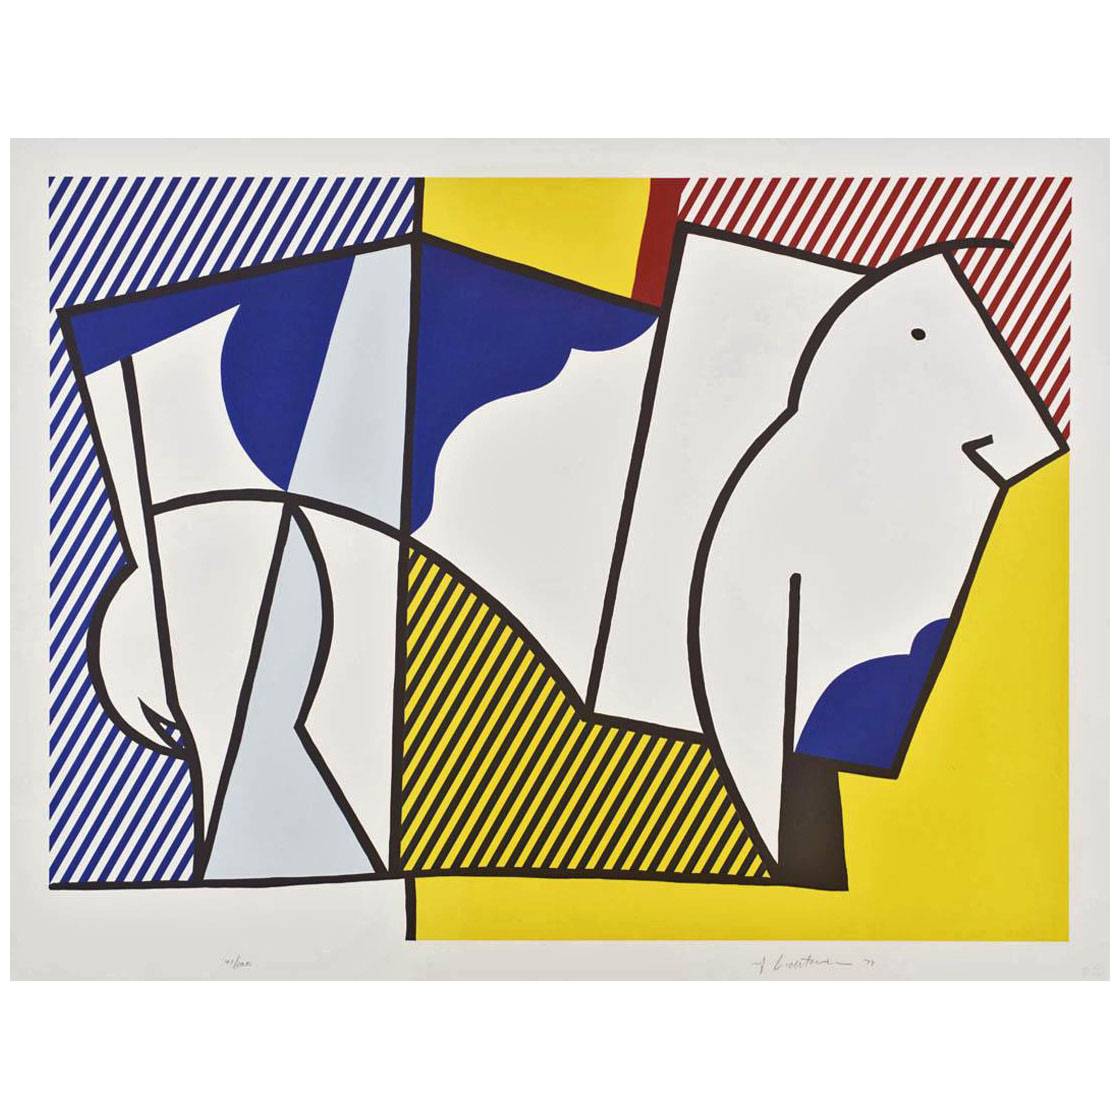 Roy Lichtenstein. Bull III. 1973. Tate Modern